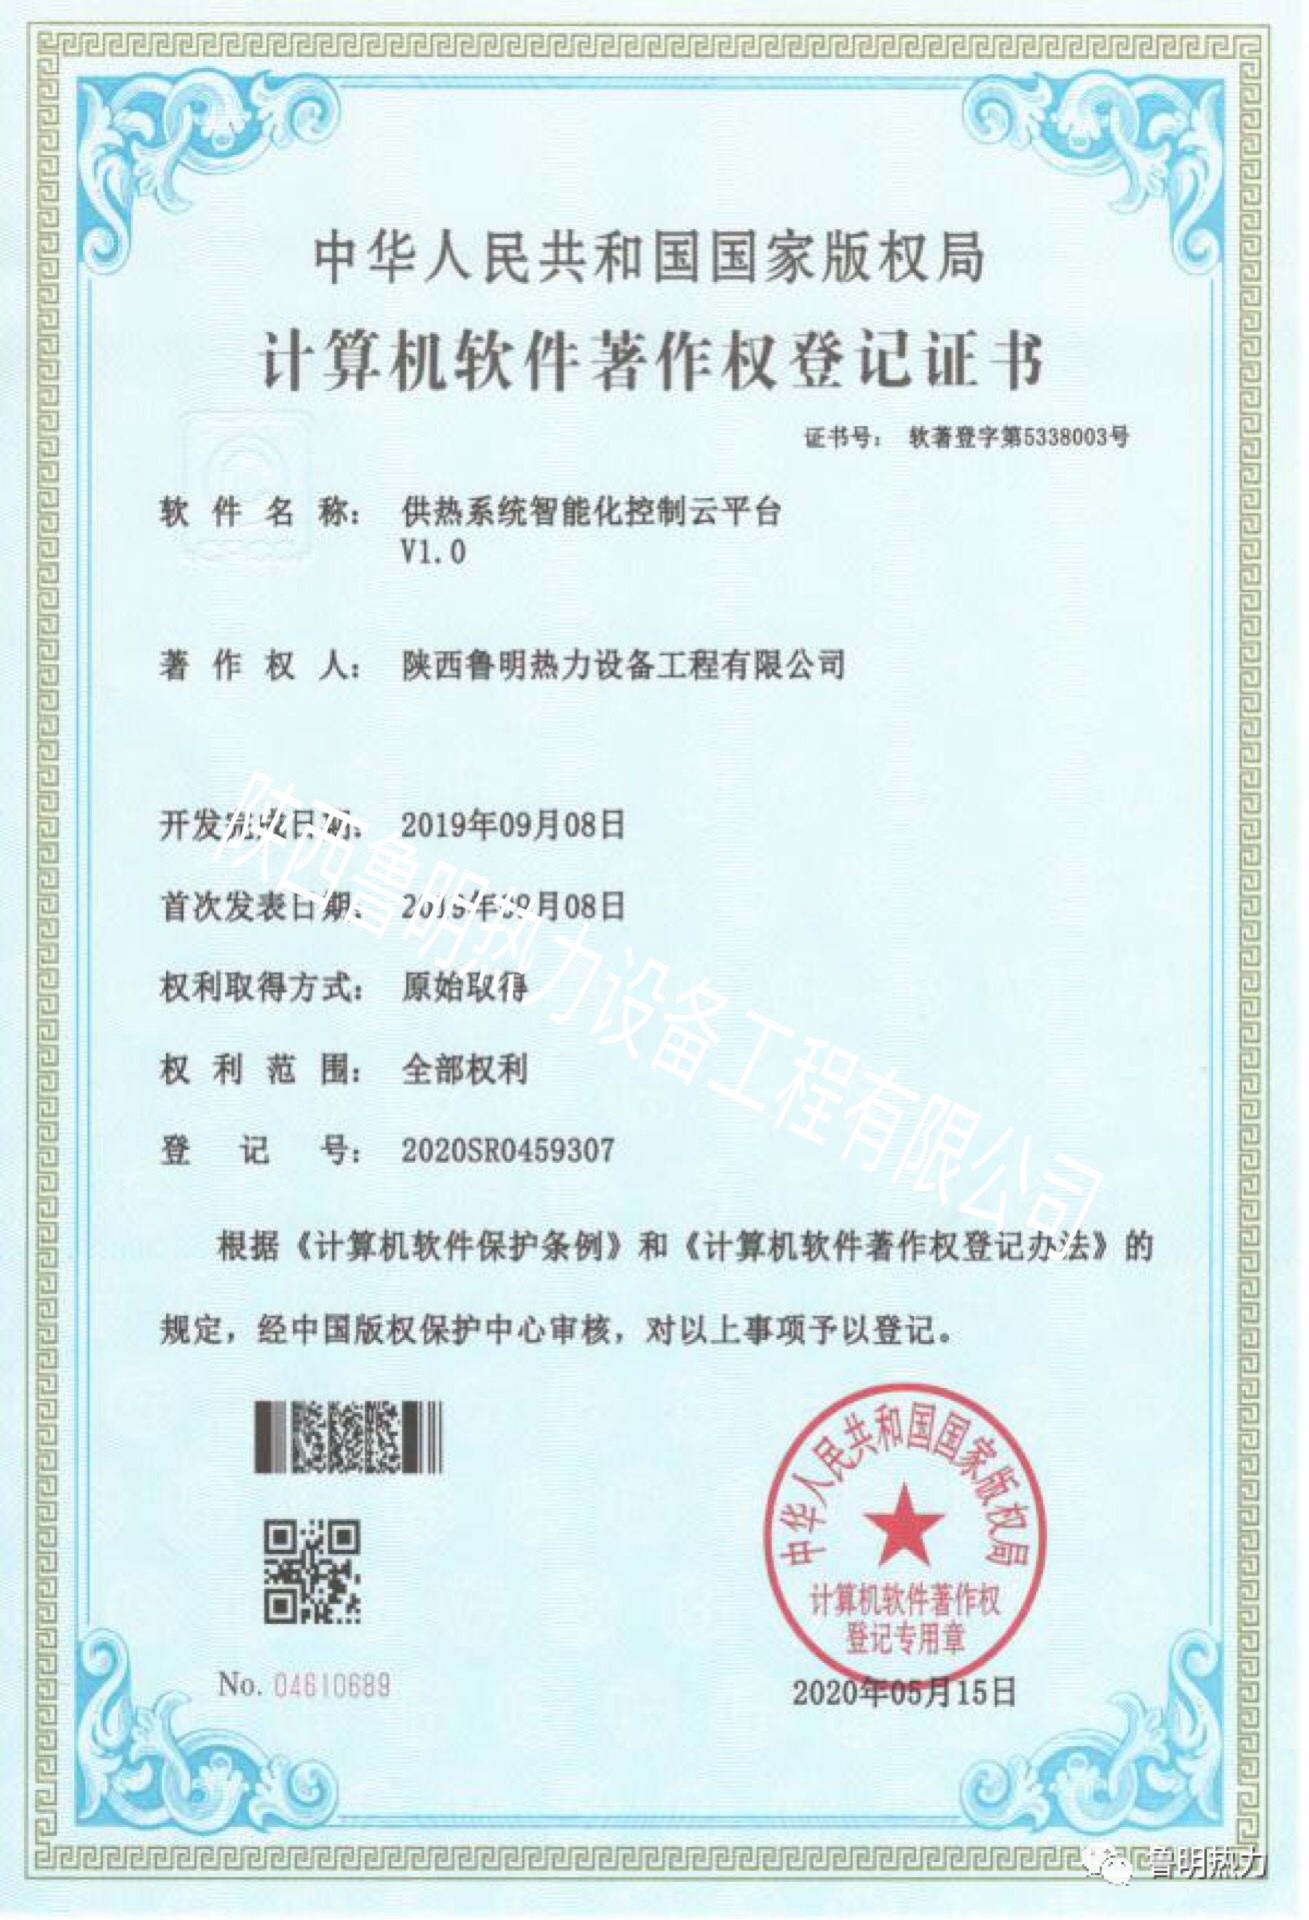 《供热系统智能化控制云平台》计算机软件著作权登记证书(图1)